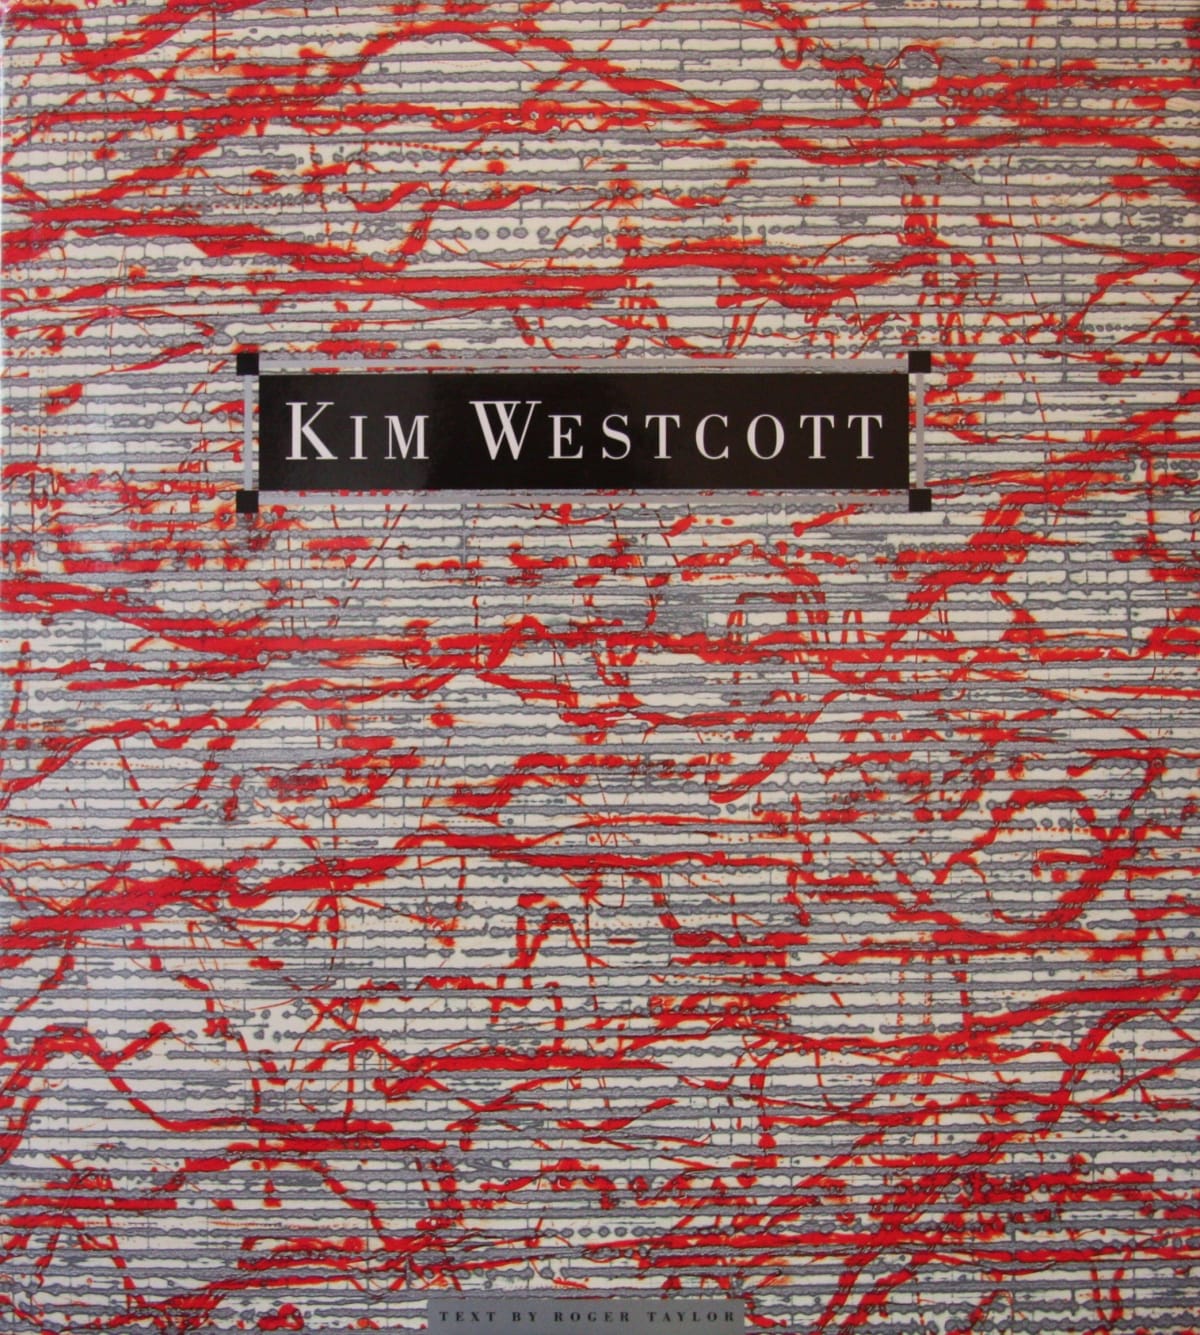 Kim Westcott